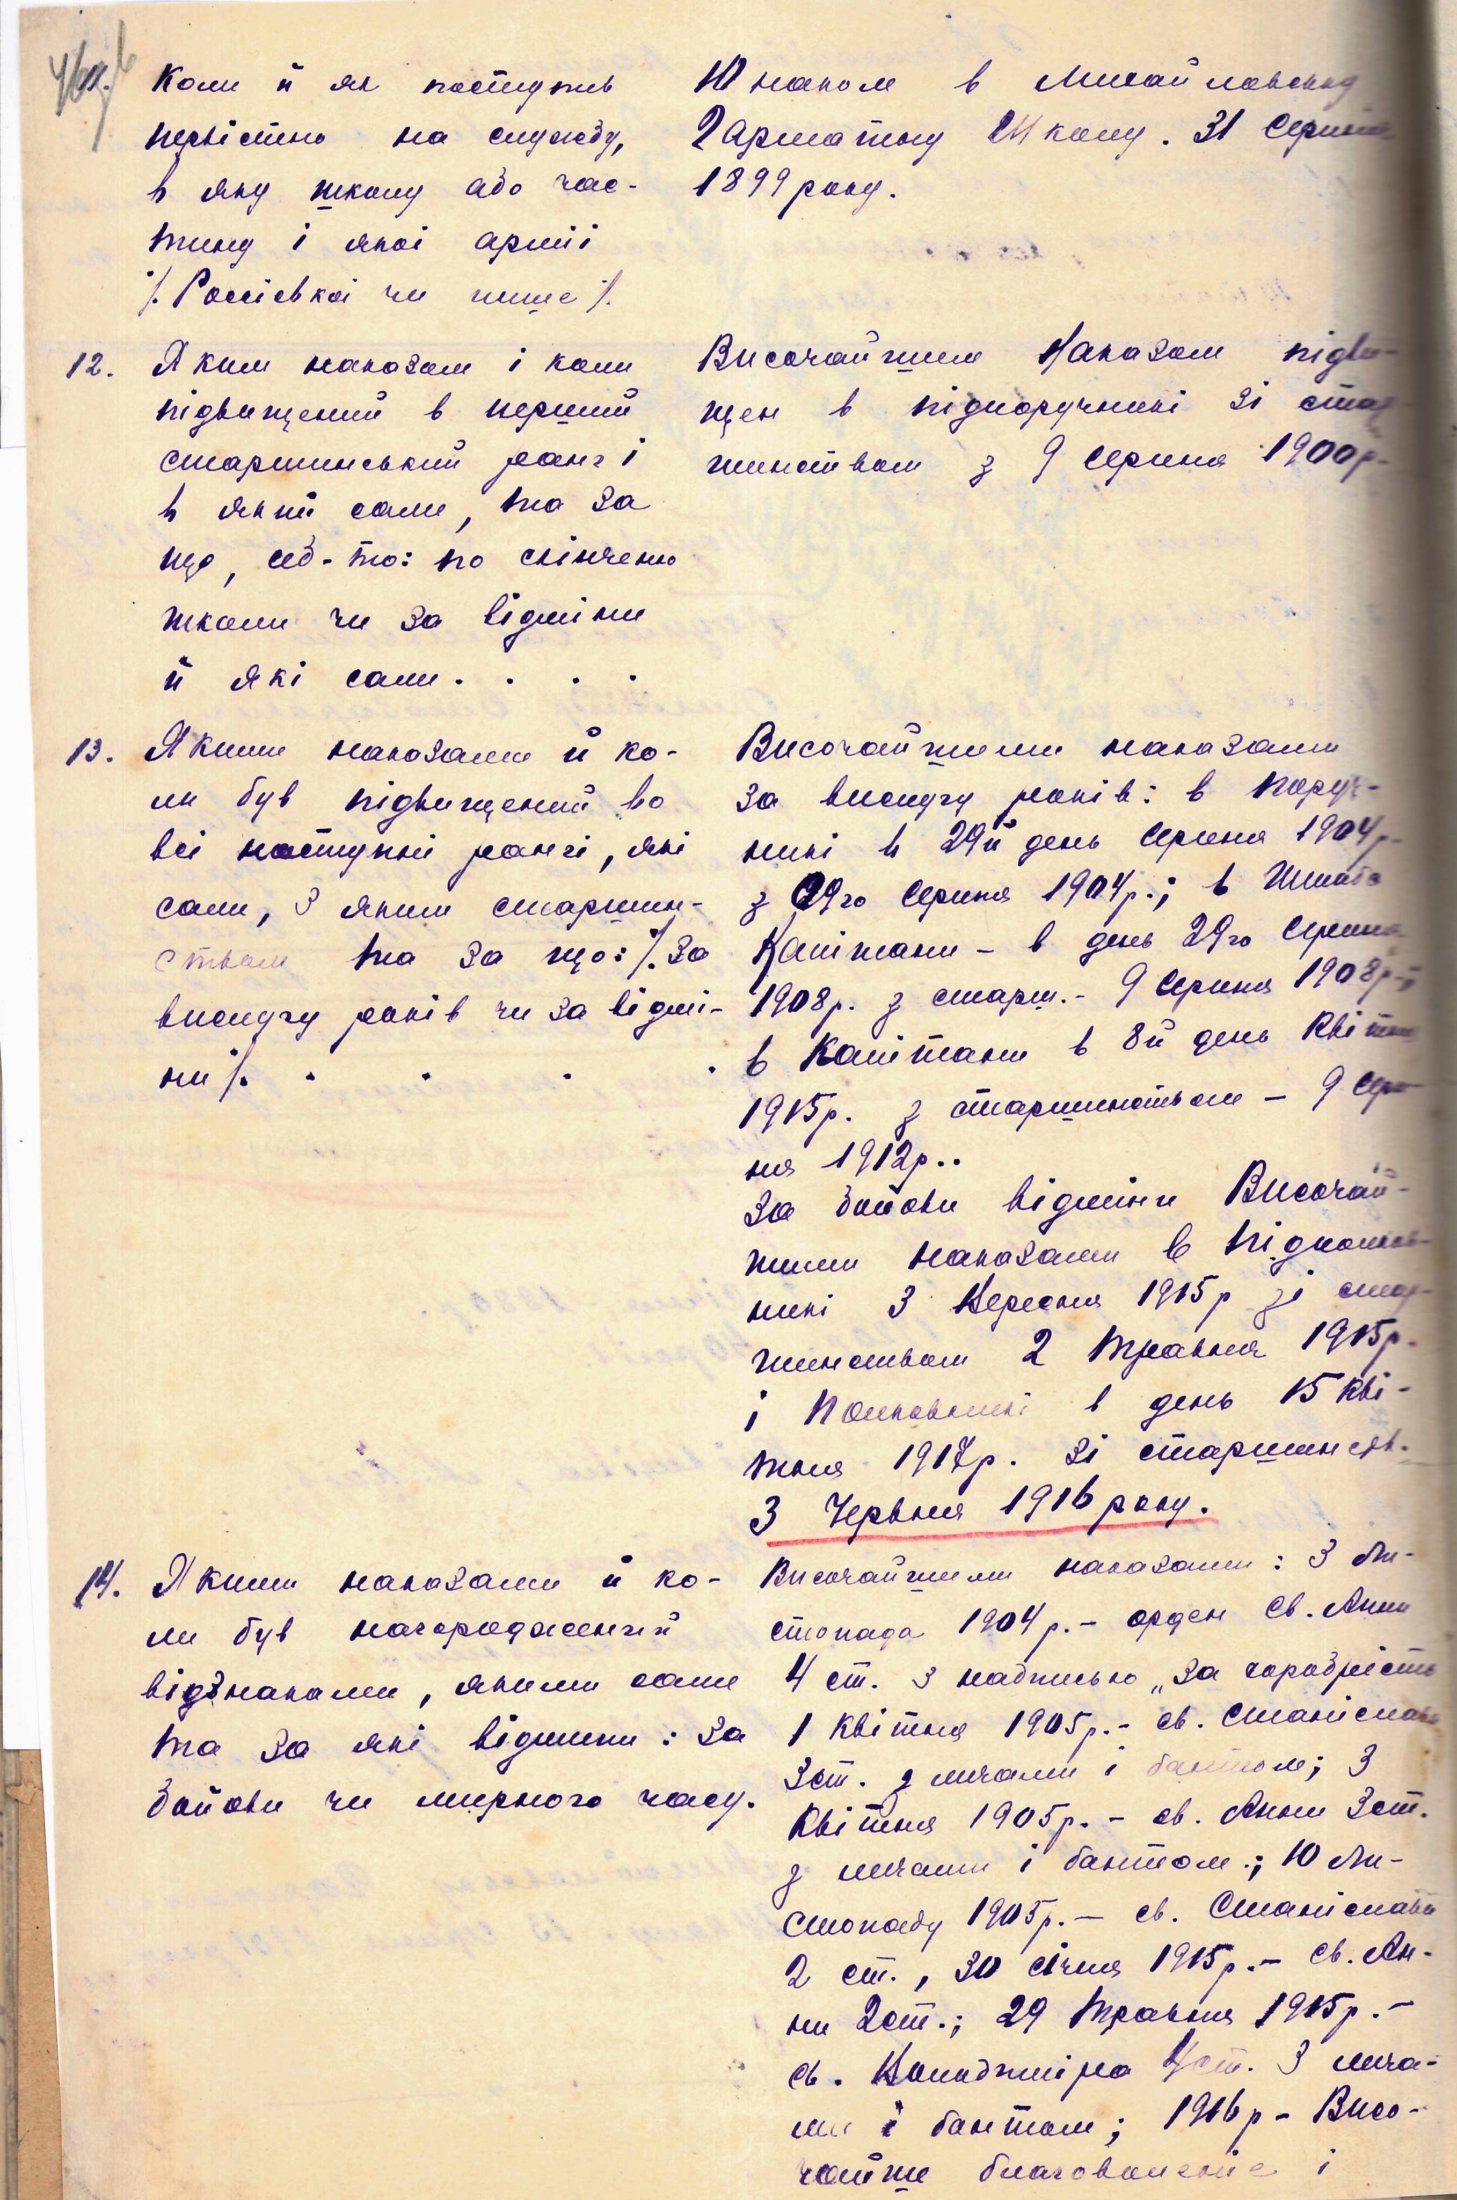 Реєстраційна картка Міністерства військових справ УНР на ім'я полковника Армії УНР О. Годила-Годлевського, якому 7 січня 1920 р. виповнилося 40 років. 